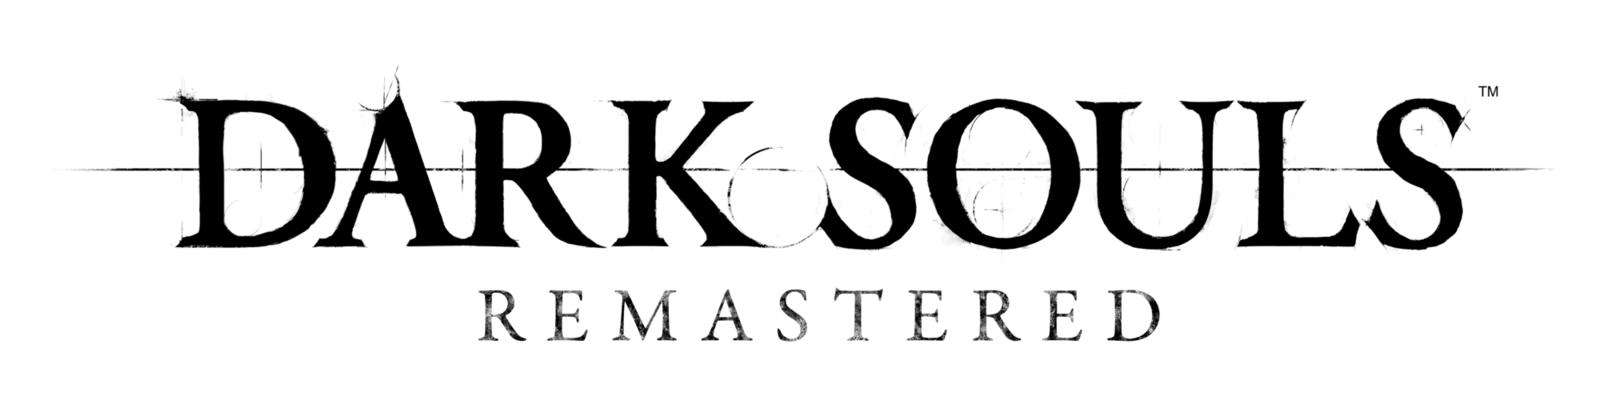 Remastered Logo - Dark Souls PNG Image Transparent Free Download